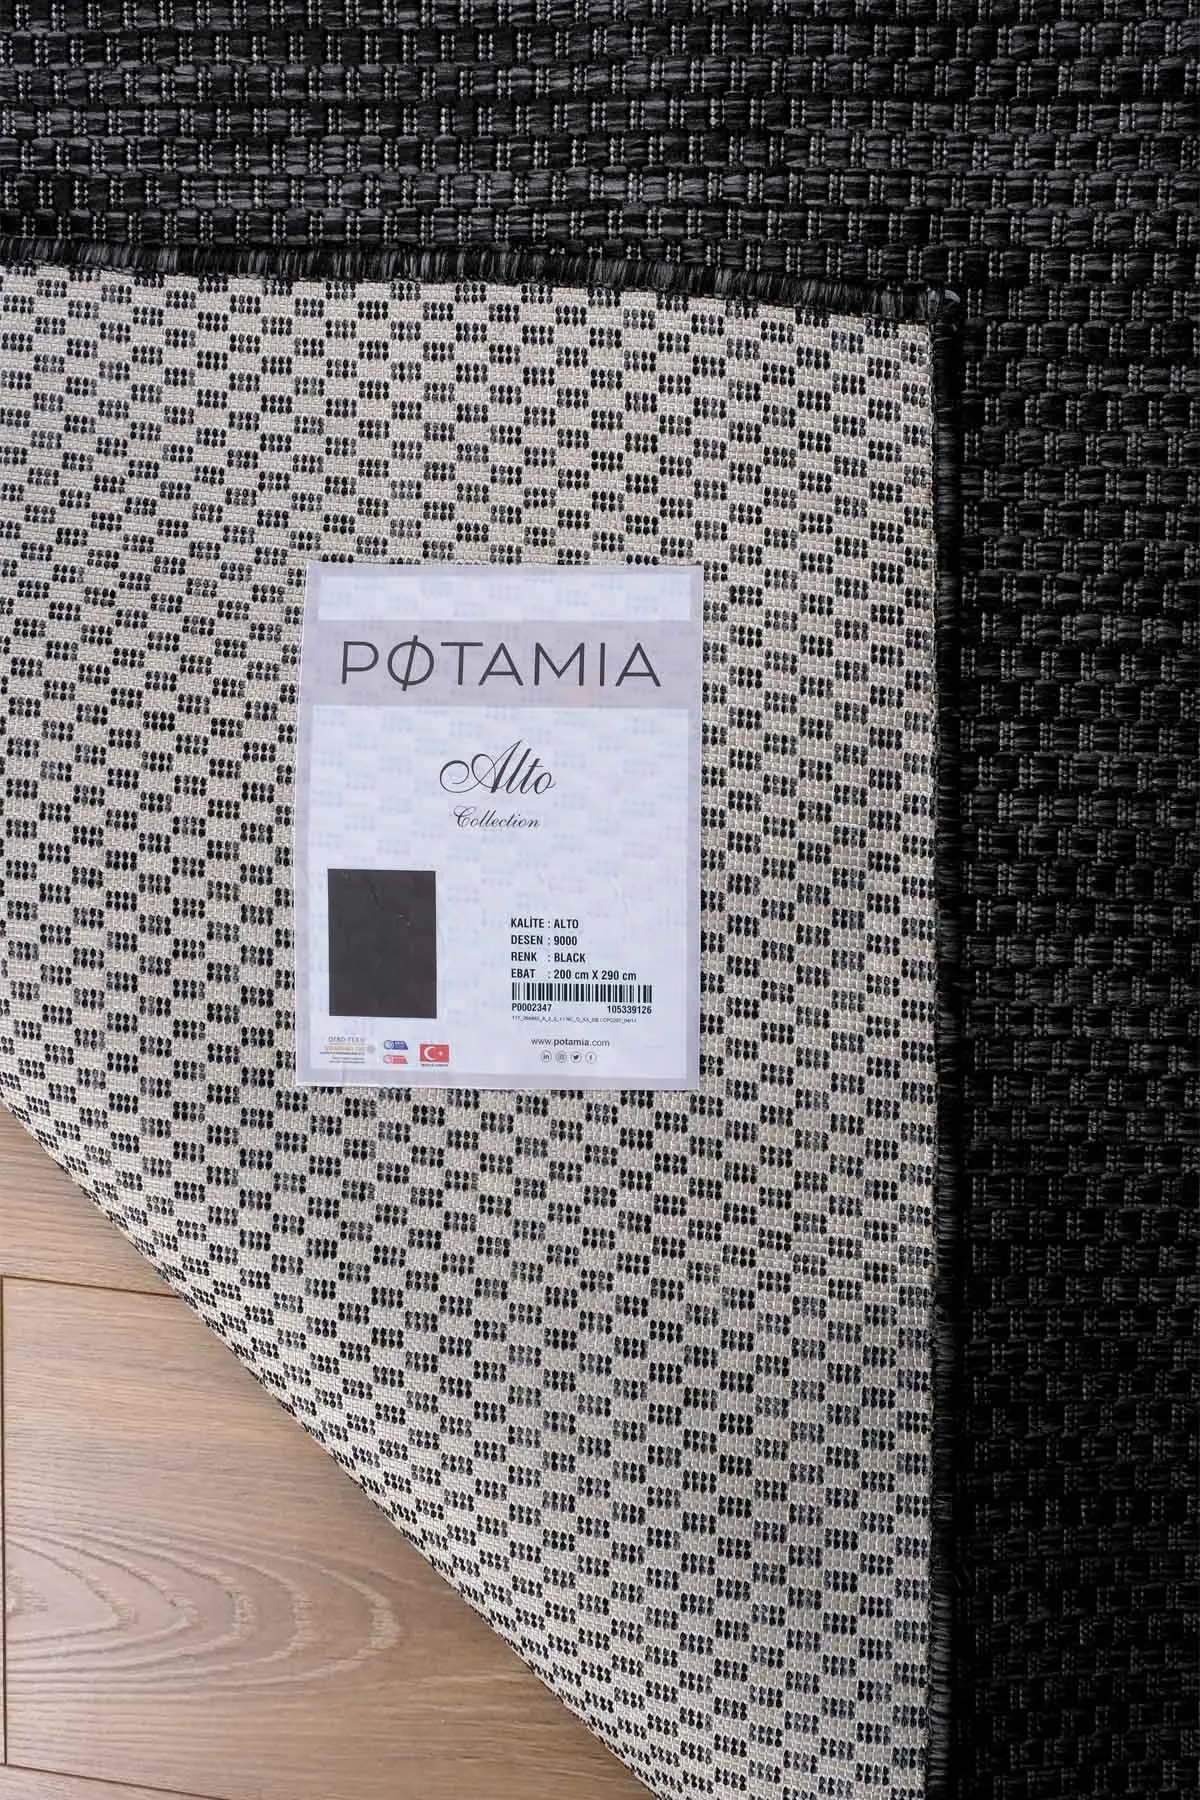 Potamia Alto Siyah Sisal Dekoratif İnce Makine Halısı 9000